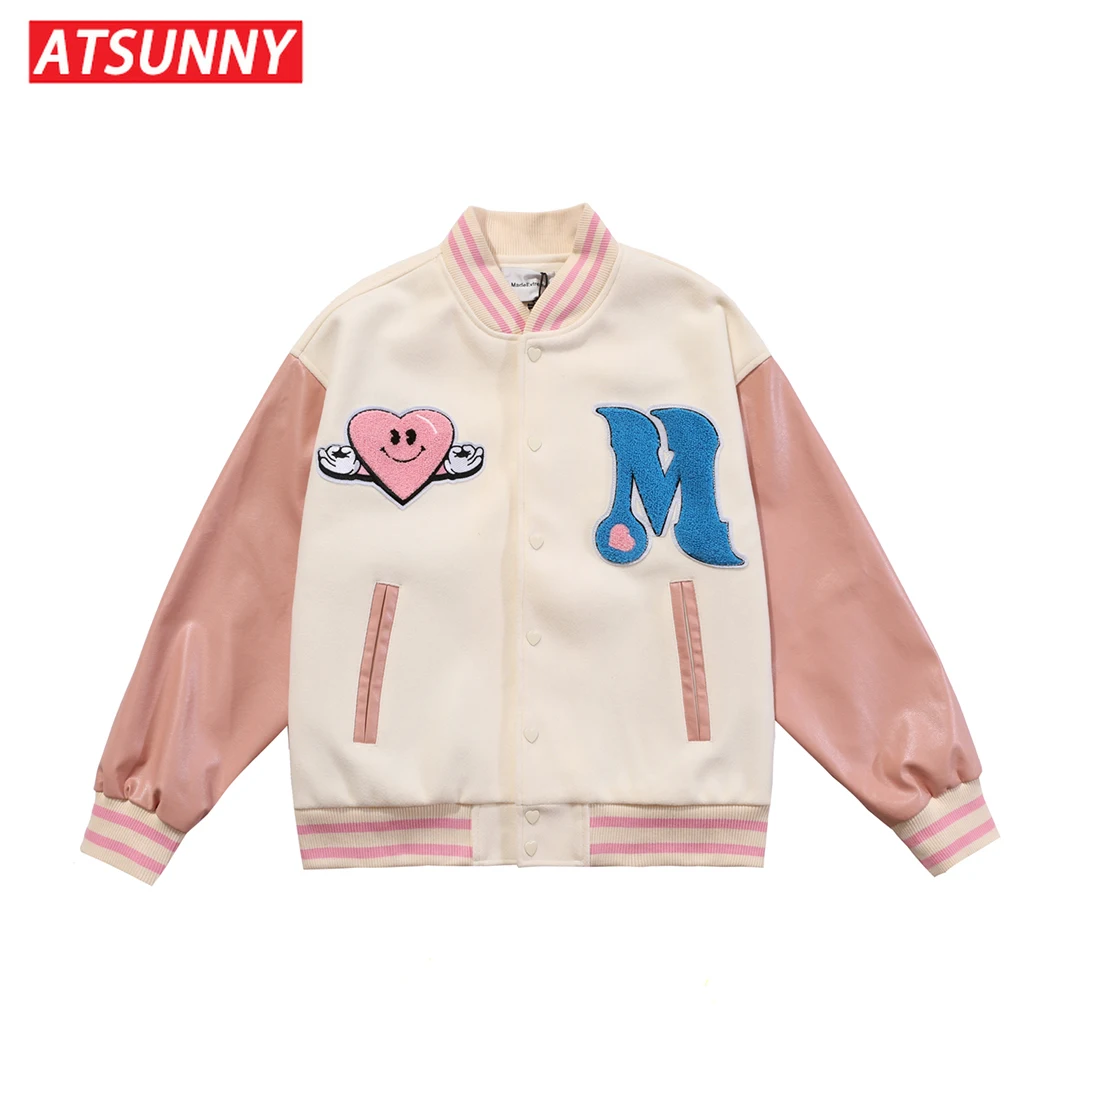 ATSUNNY Hip Hop Baseball Jacket Harajuku Retro Varsity Jacket Casual Mens cotton Jacket Fashion Coat Streetwear Tops